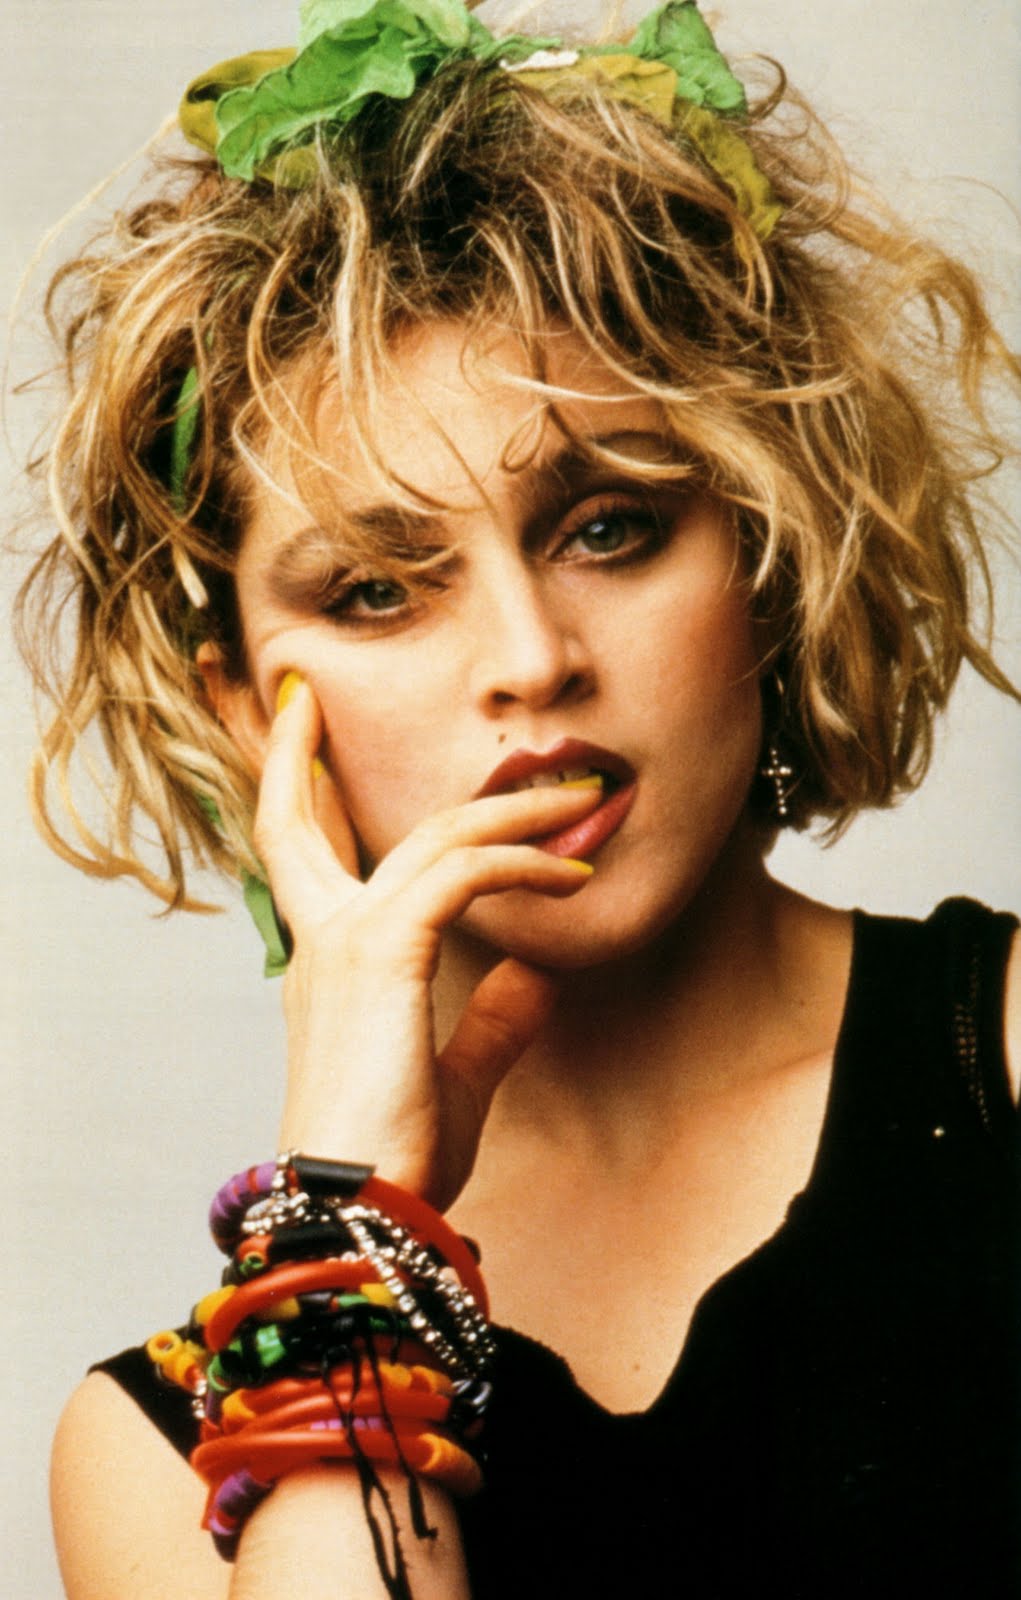 Helmut_Werb_Madonna_83.jpg